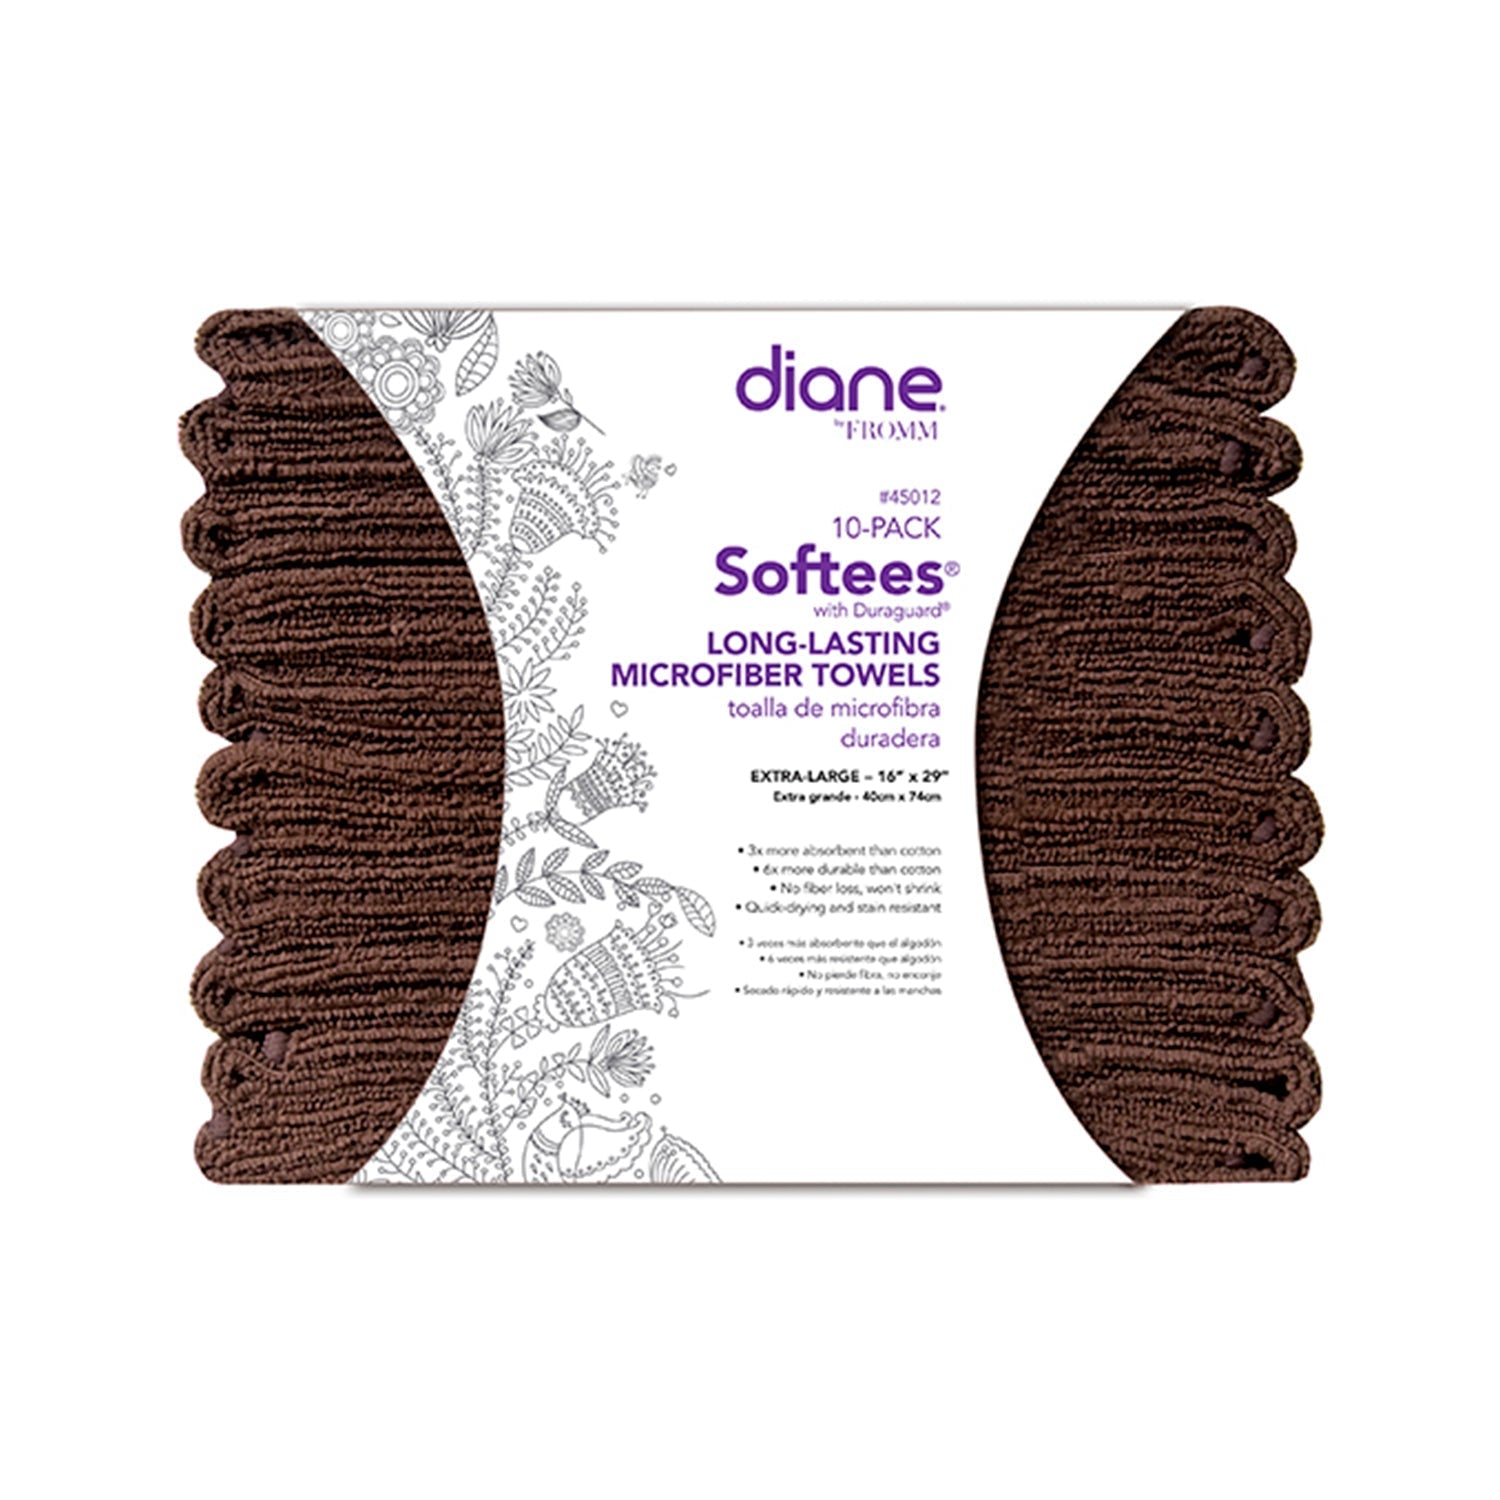 Diane Softees Microfiber Towels